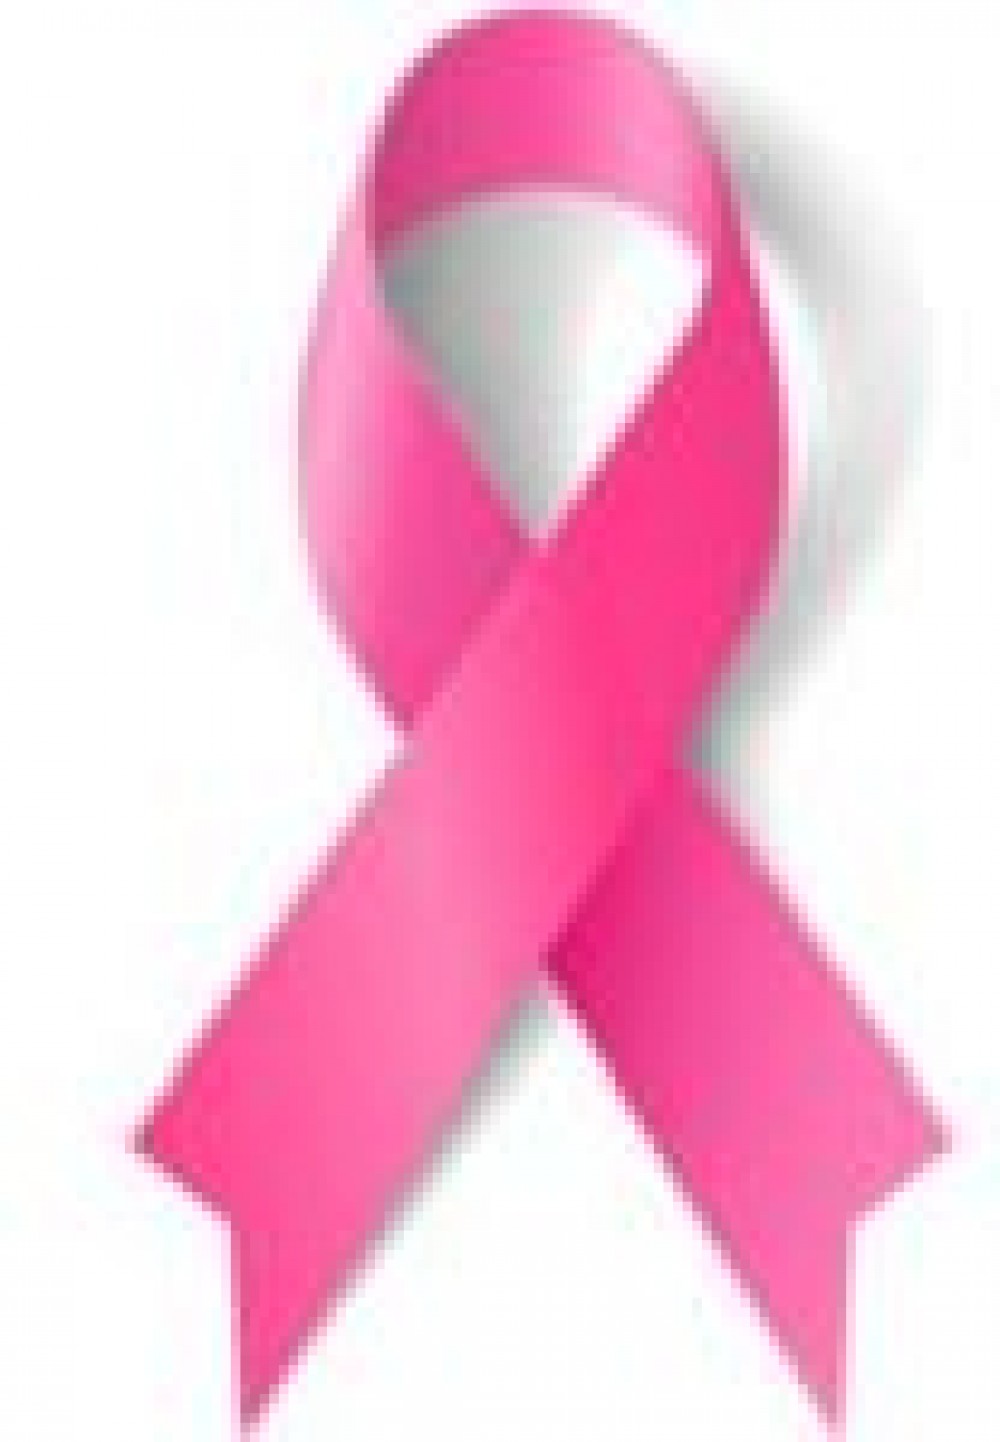 Rožnati oktober - predavanje o raku dojk in demonstracija samopregledovanja dojk